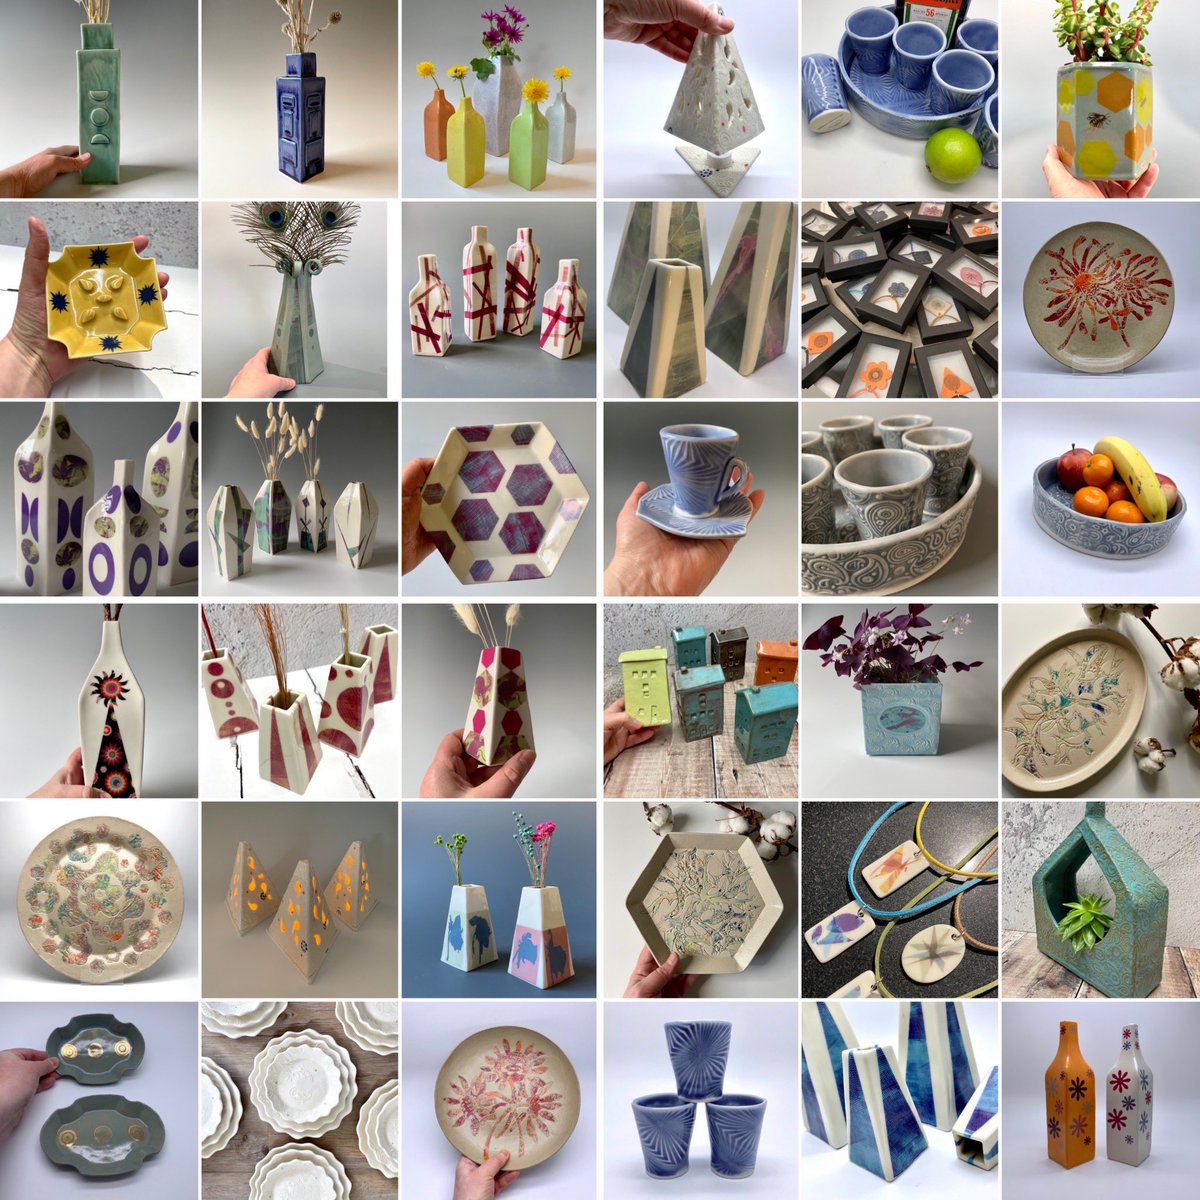 Handmade ceramics made in Scotland google.co.uk/search?q=karen…
#madeinscotland #uniquegifts #uniqueceramics #scottish #scottishartanddesign